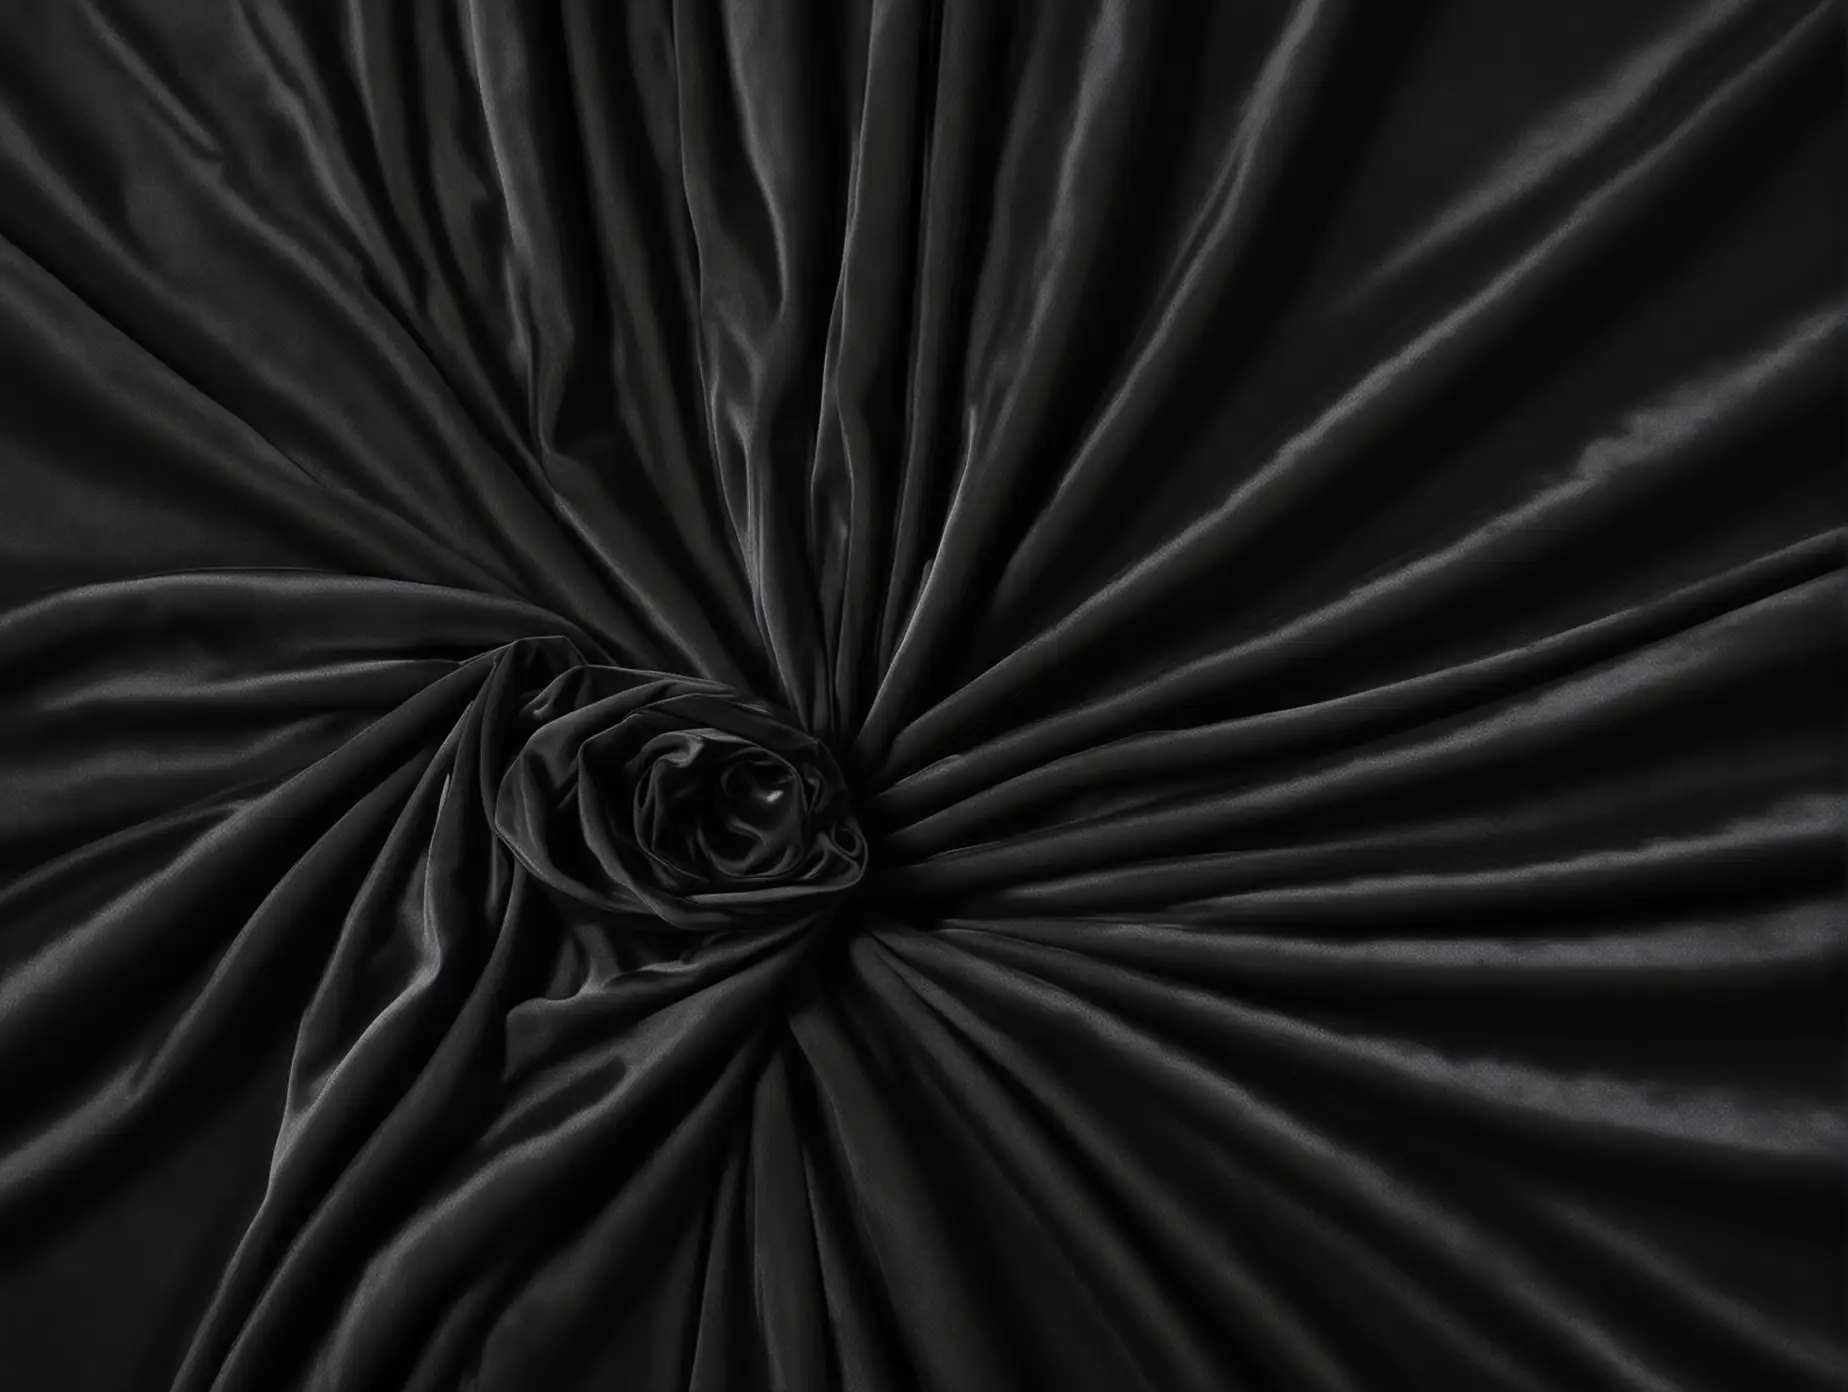 Hyperrealistic Black Velvet Fabric Draped on Left Side with Dark Background